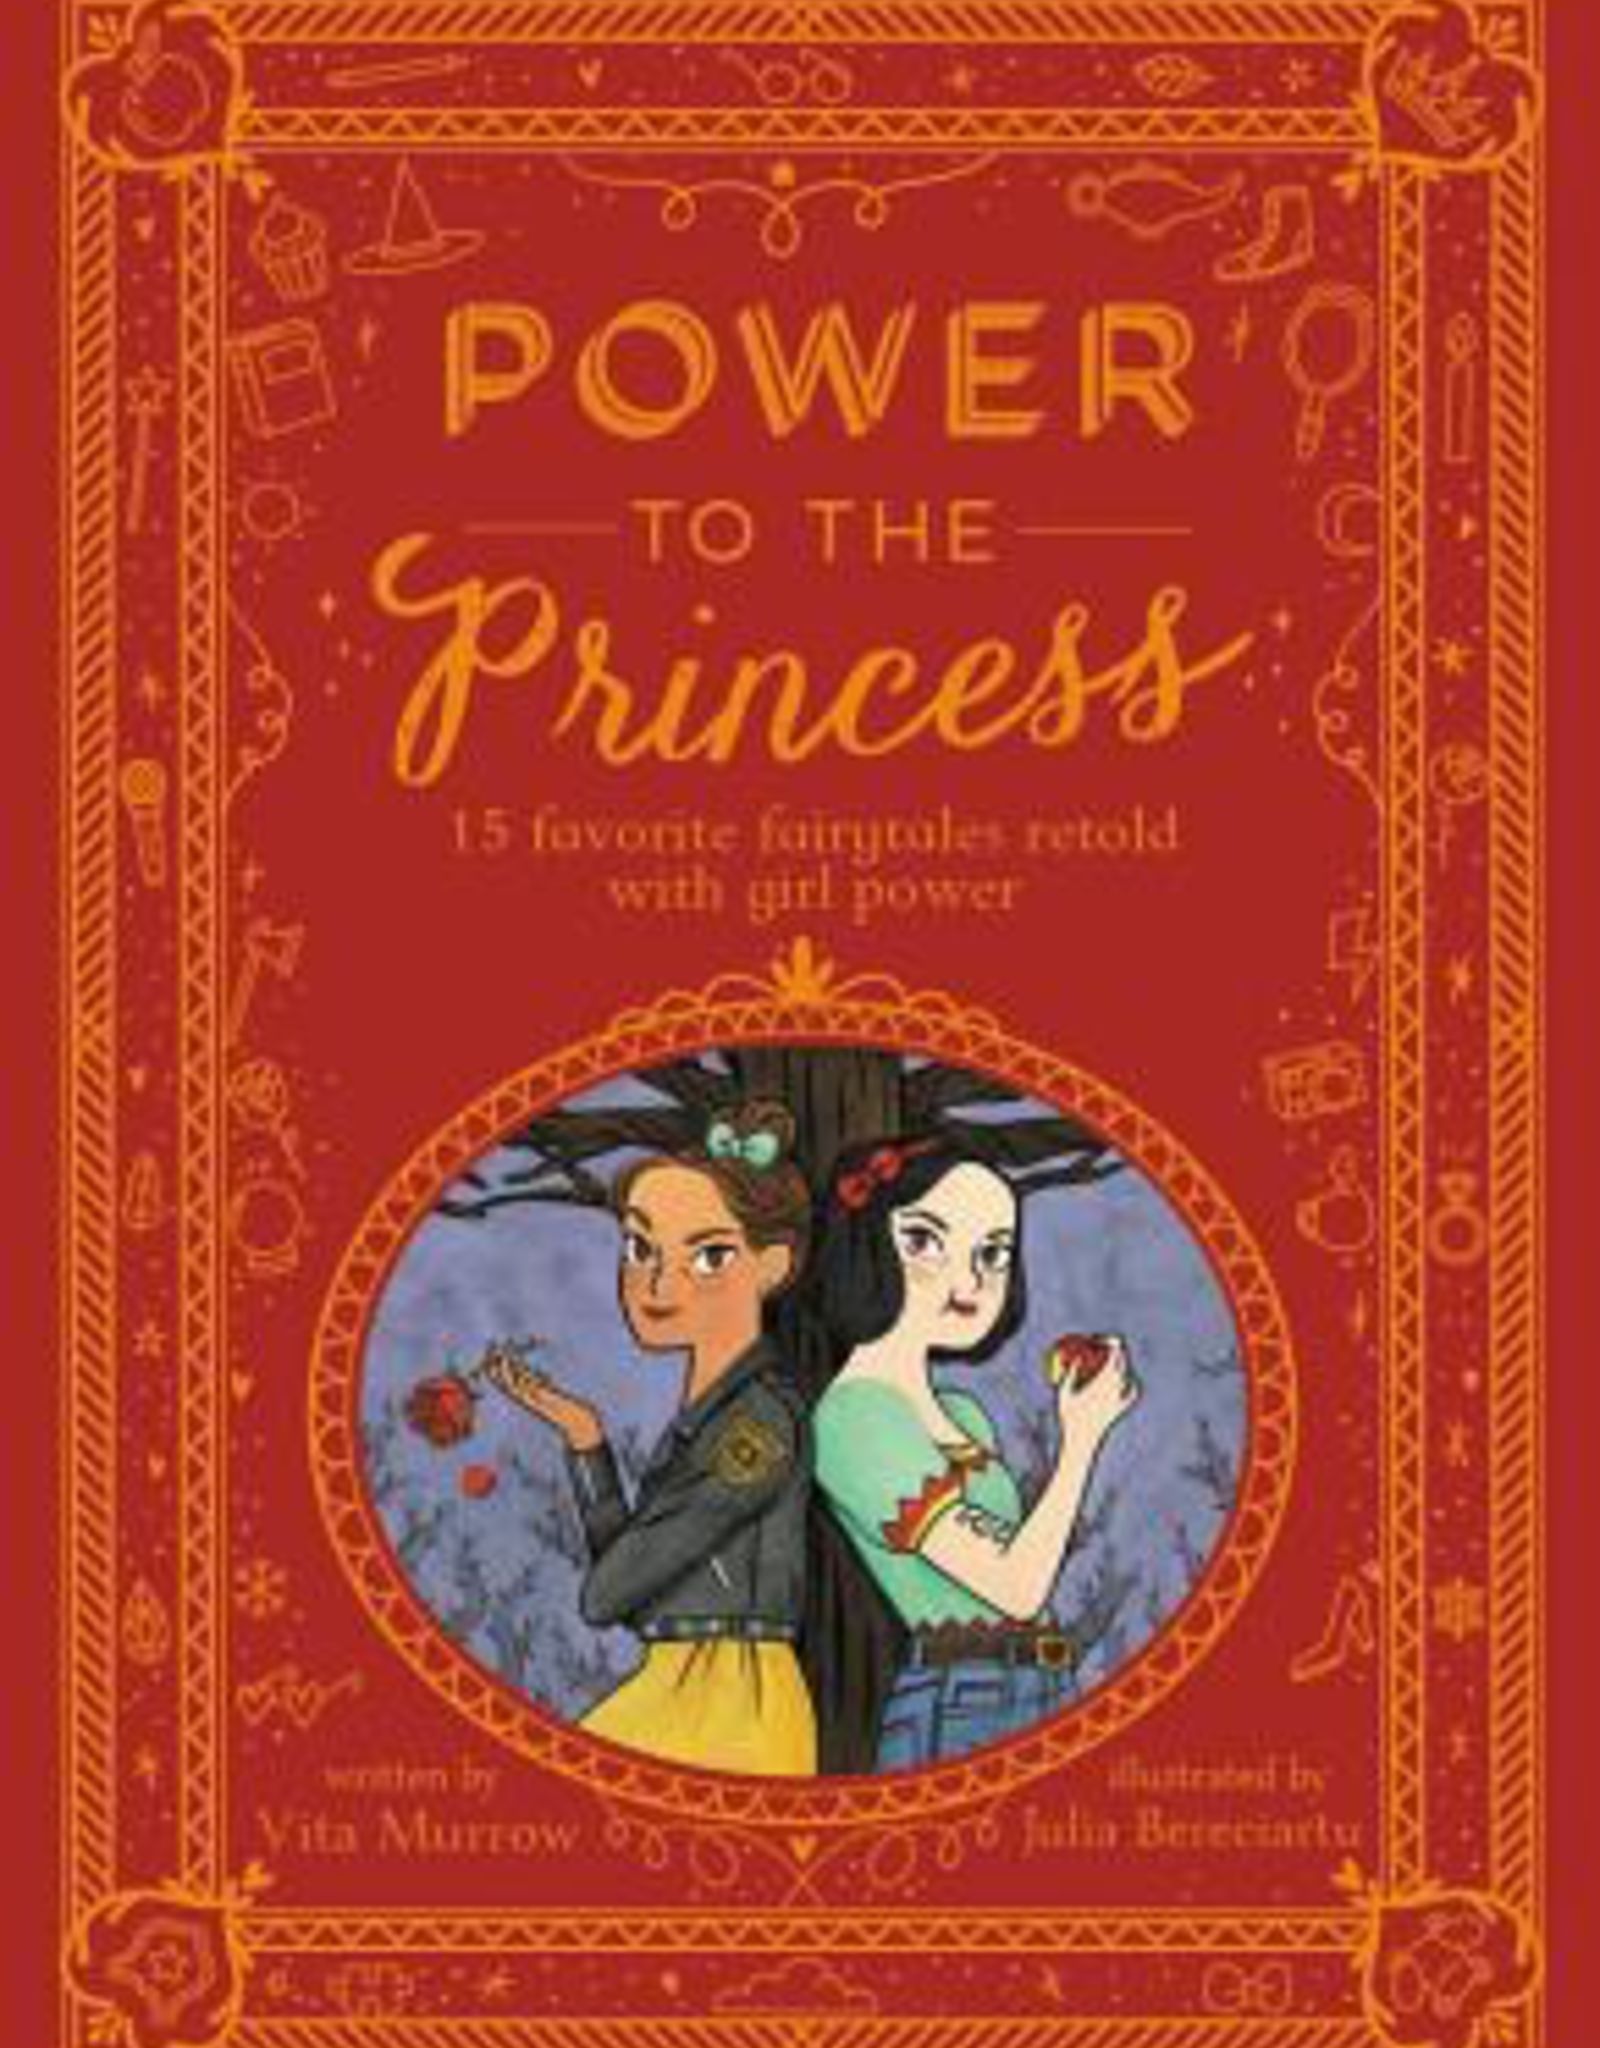 Power to the Princess by Vita Murrow